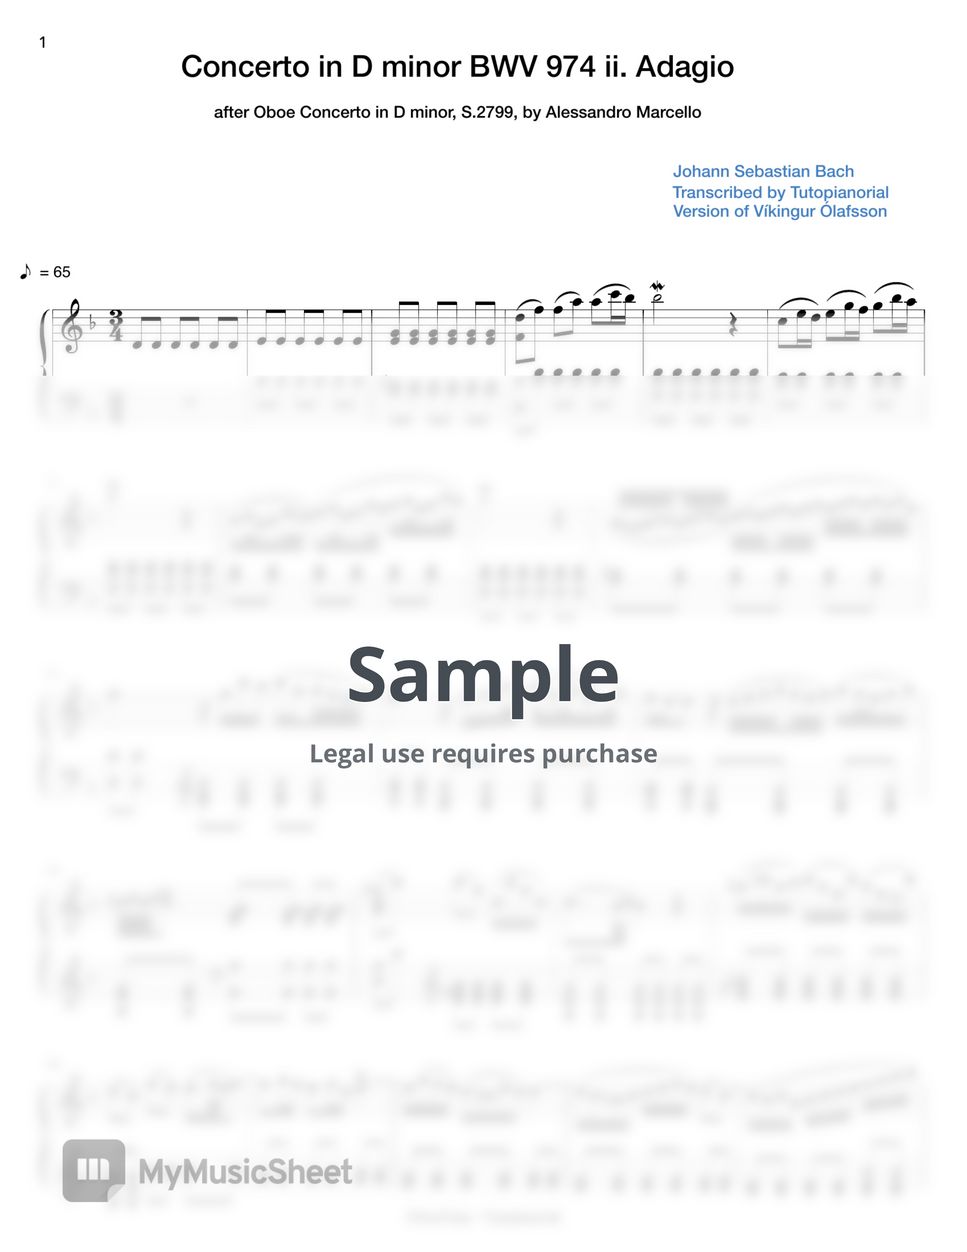 Bach/Marcello - Adagio D minor (BWV 974) by Tutopianorial